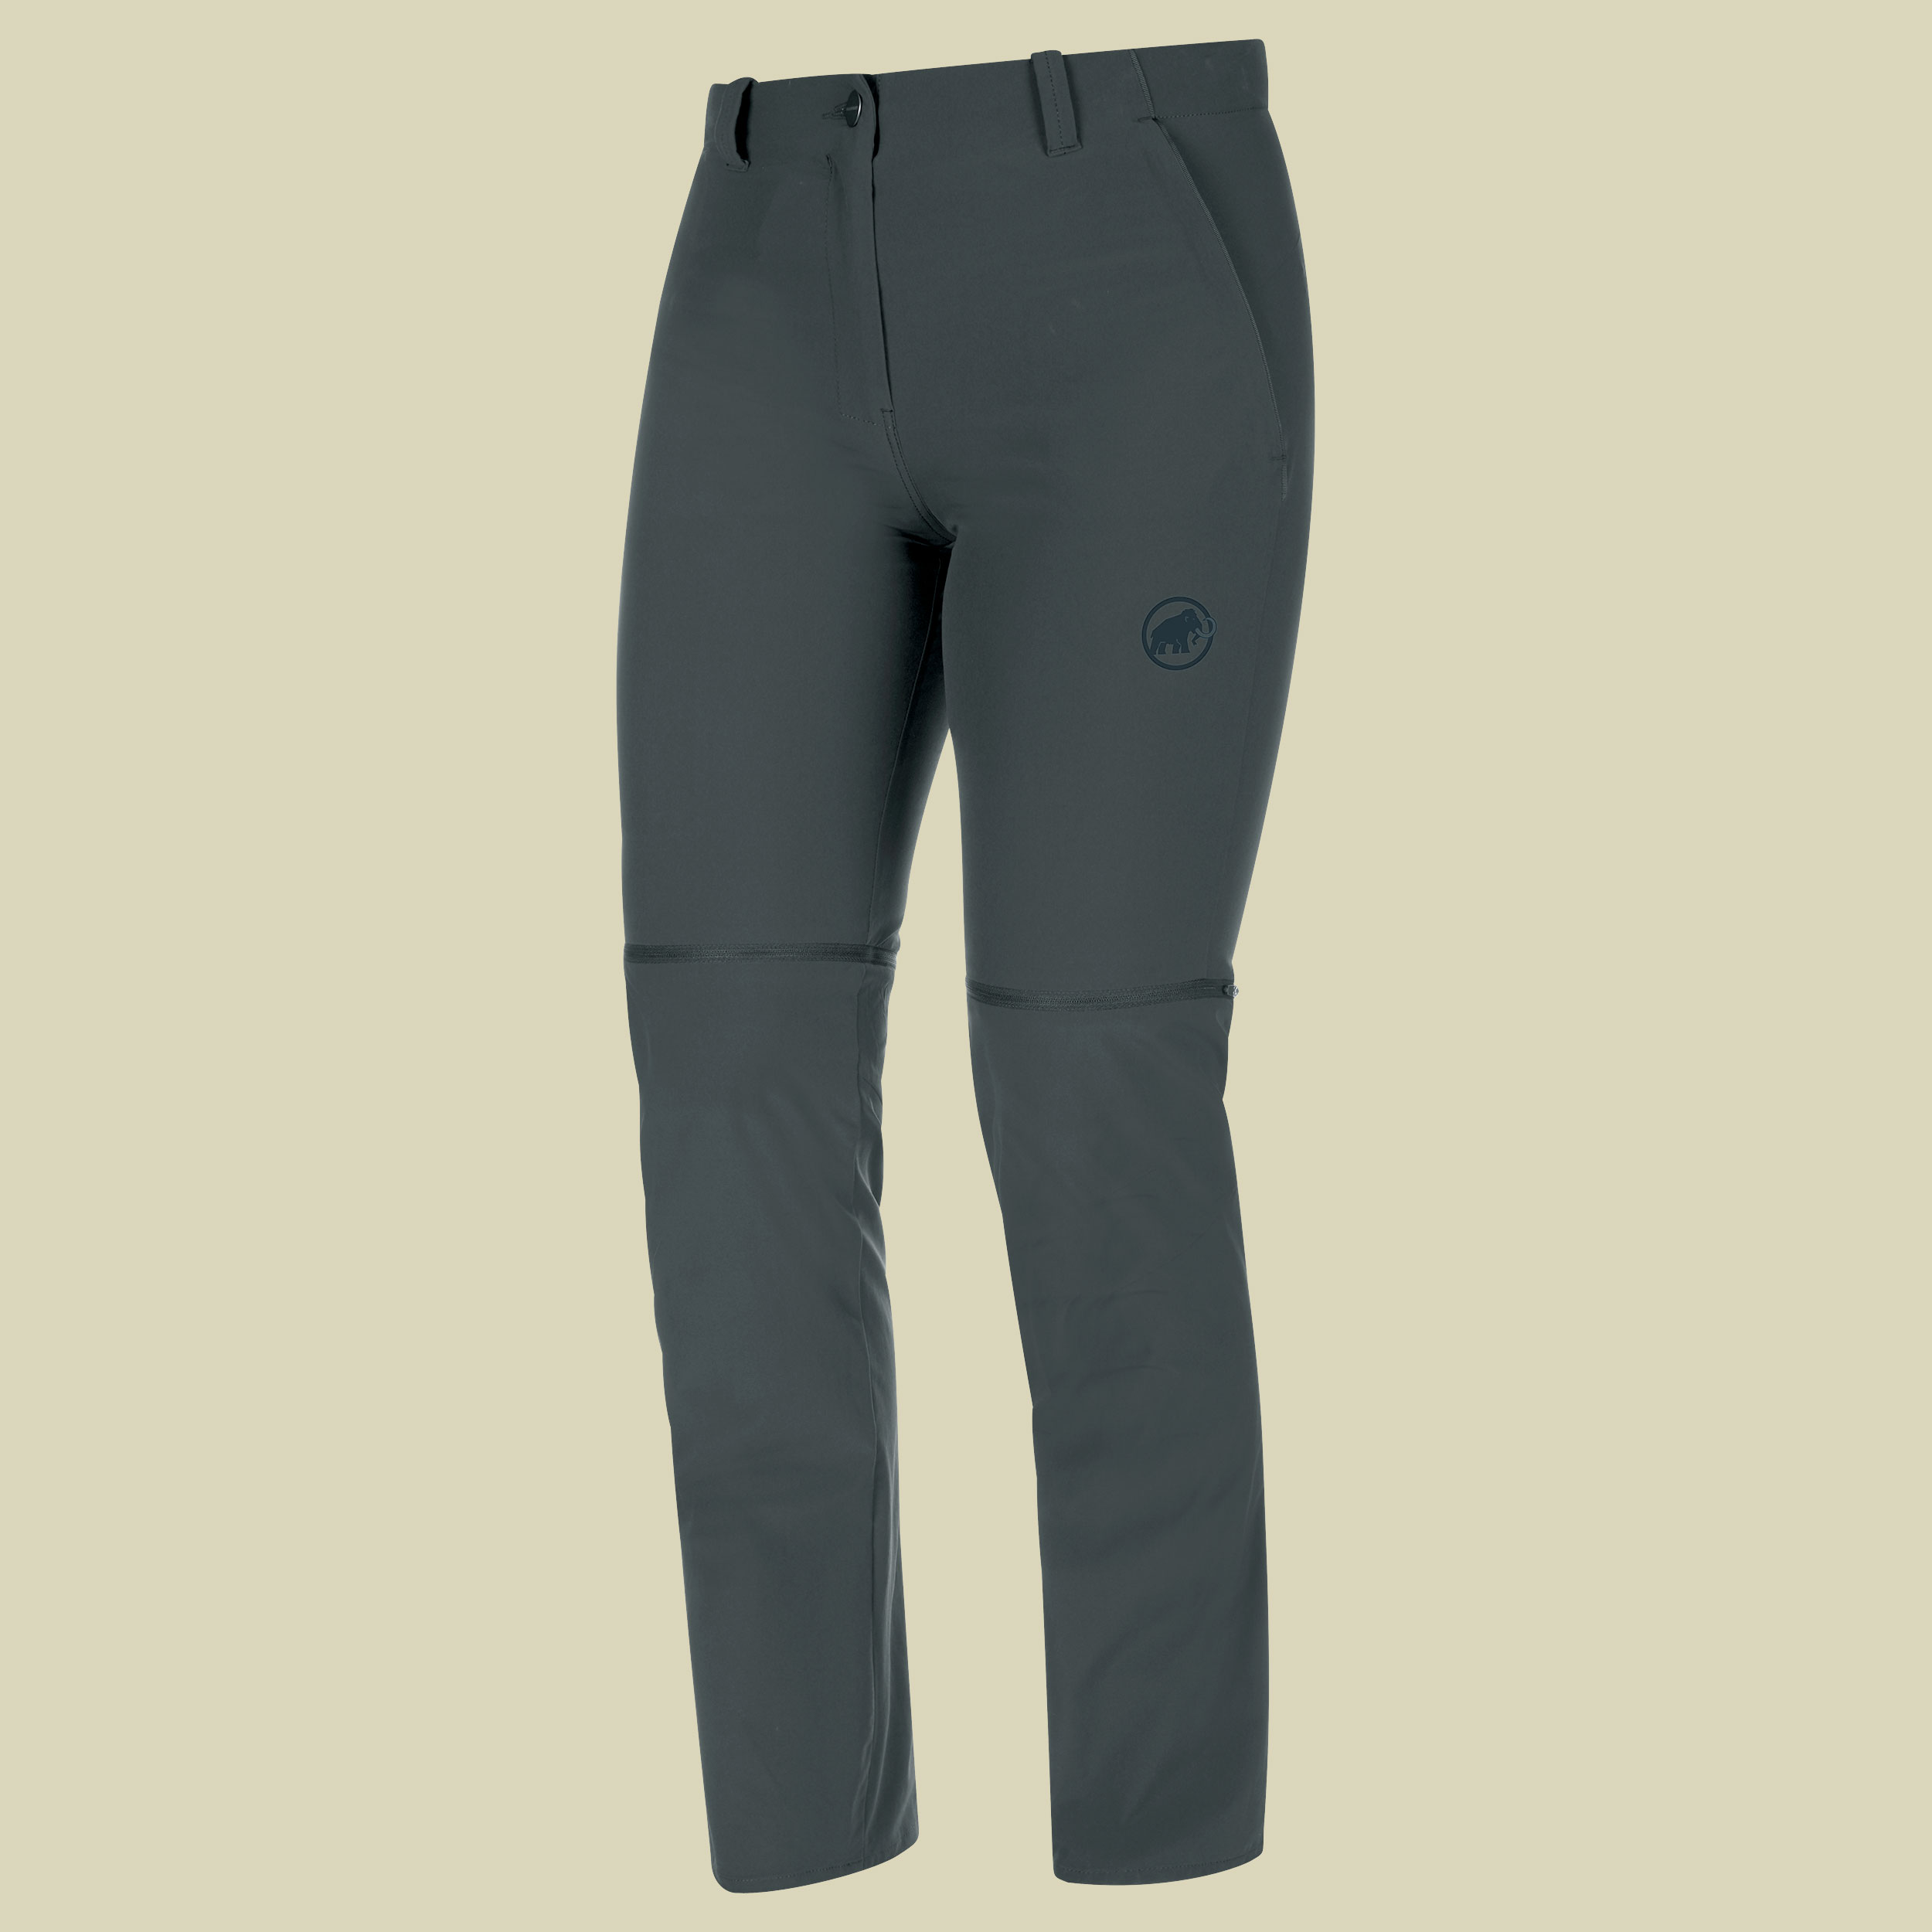 Runbold Zip Off Pants Women Größe 44-short Farbe phantom